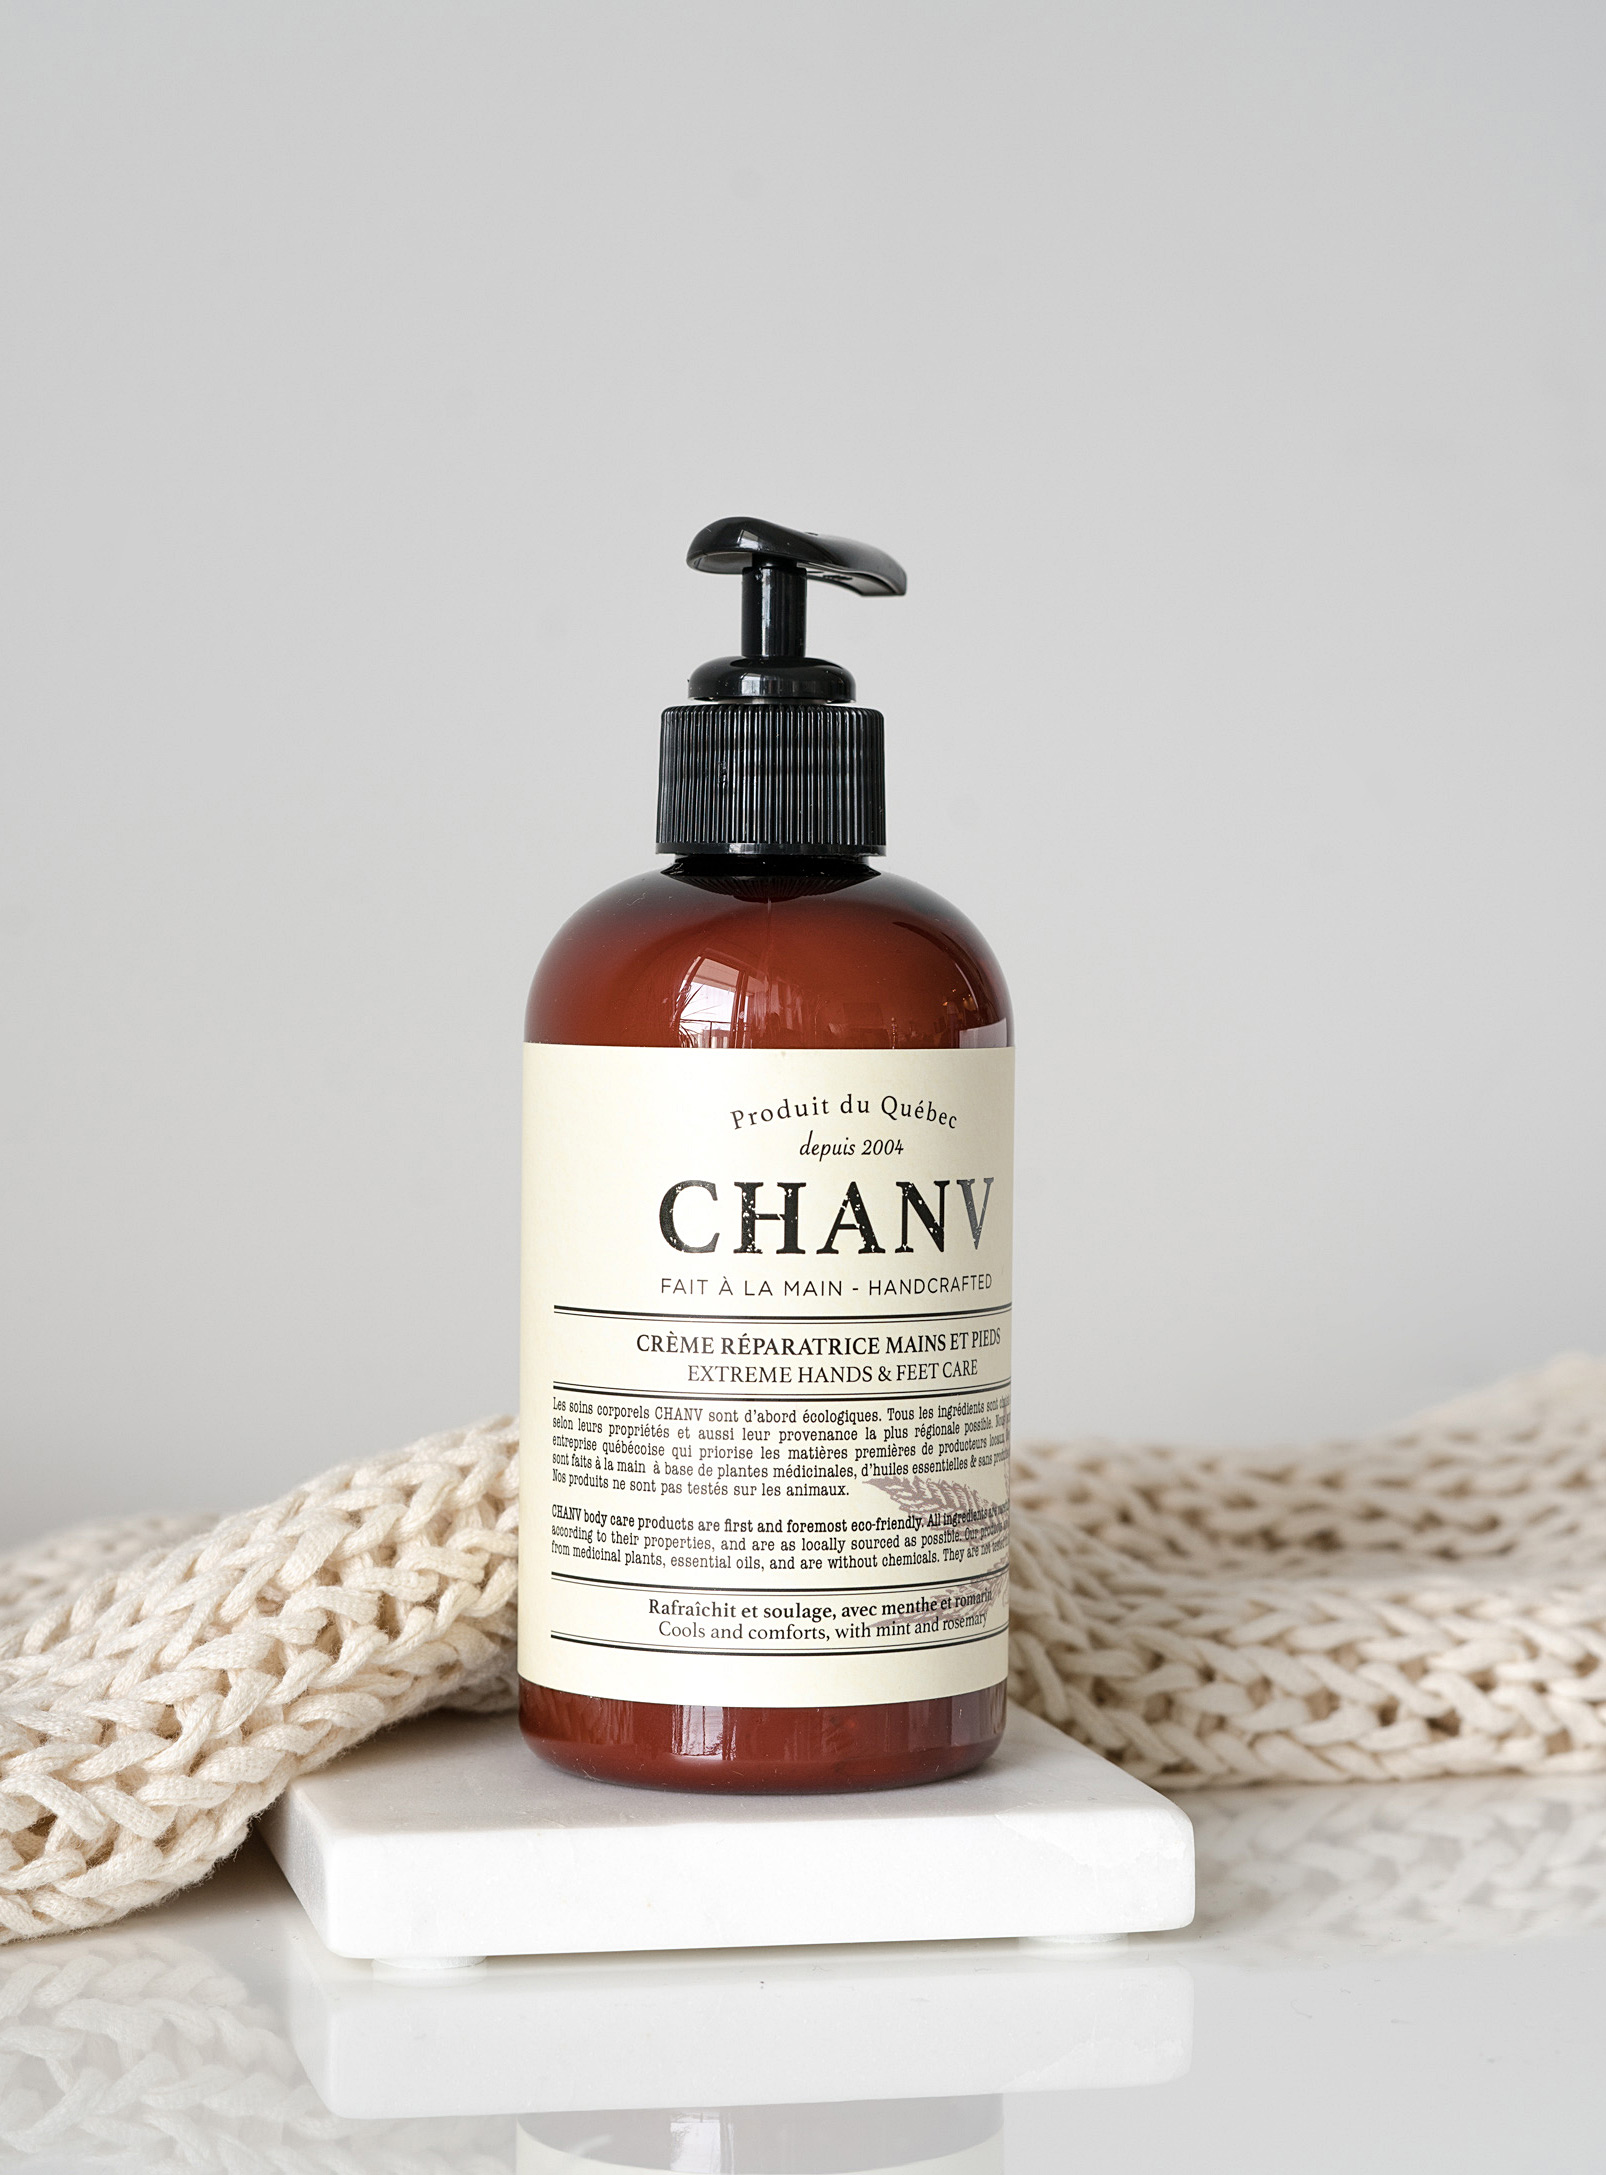 Chanv - La crème réparatrice mains et pieds